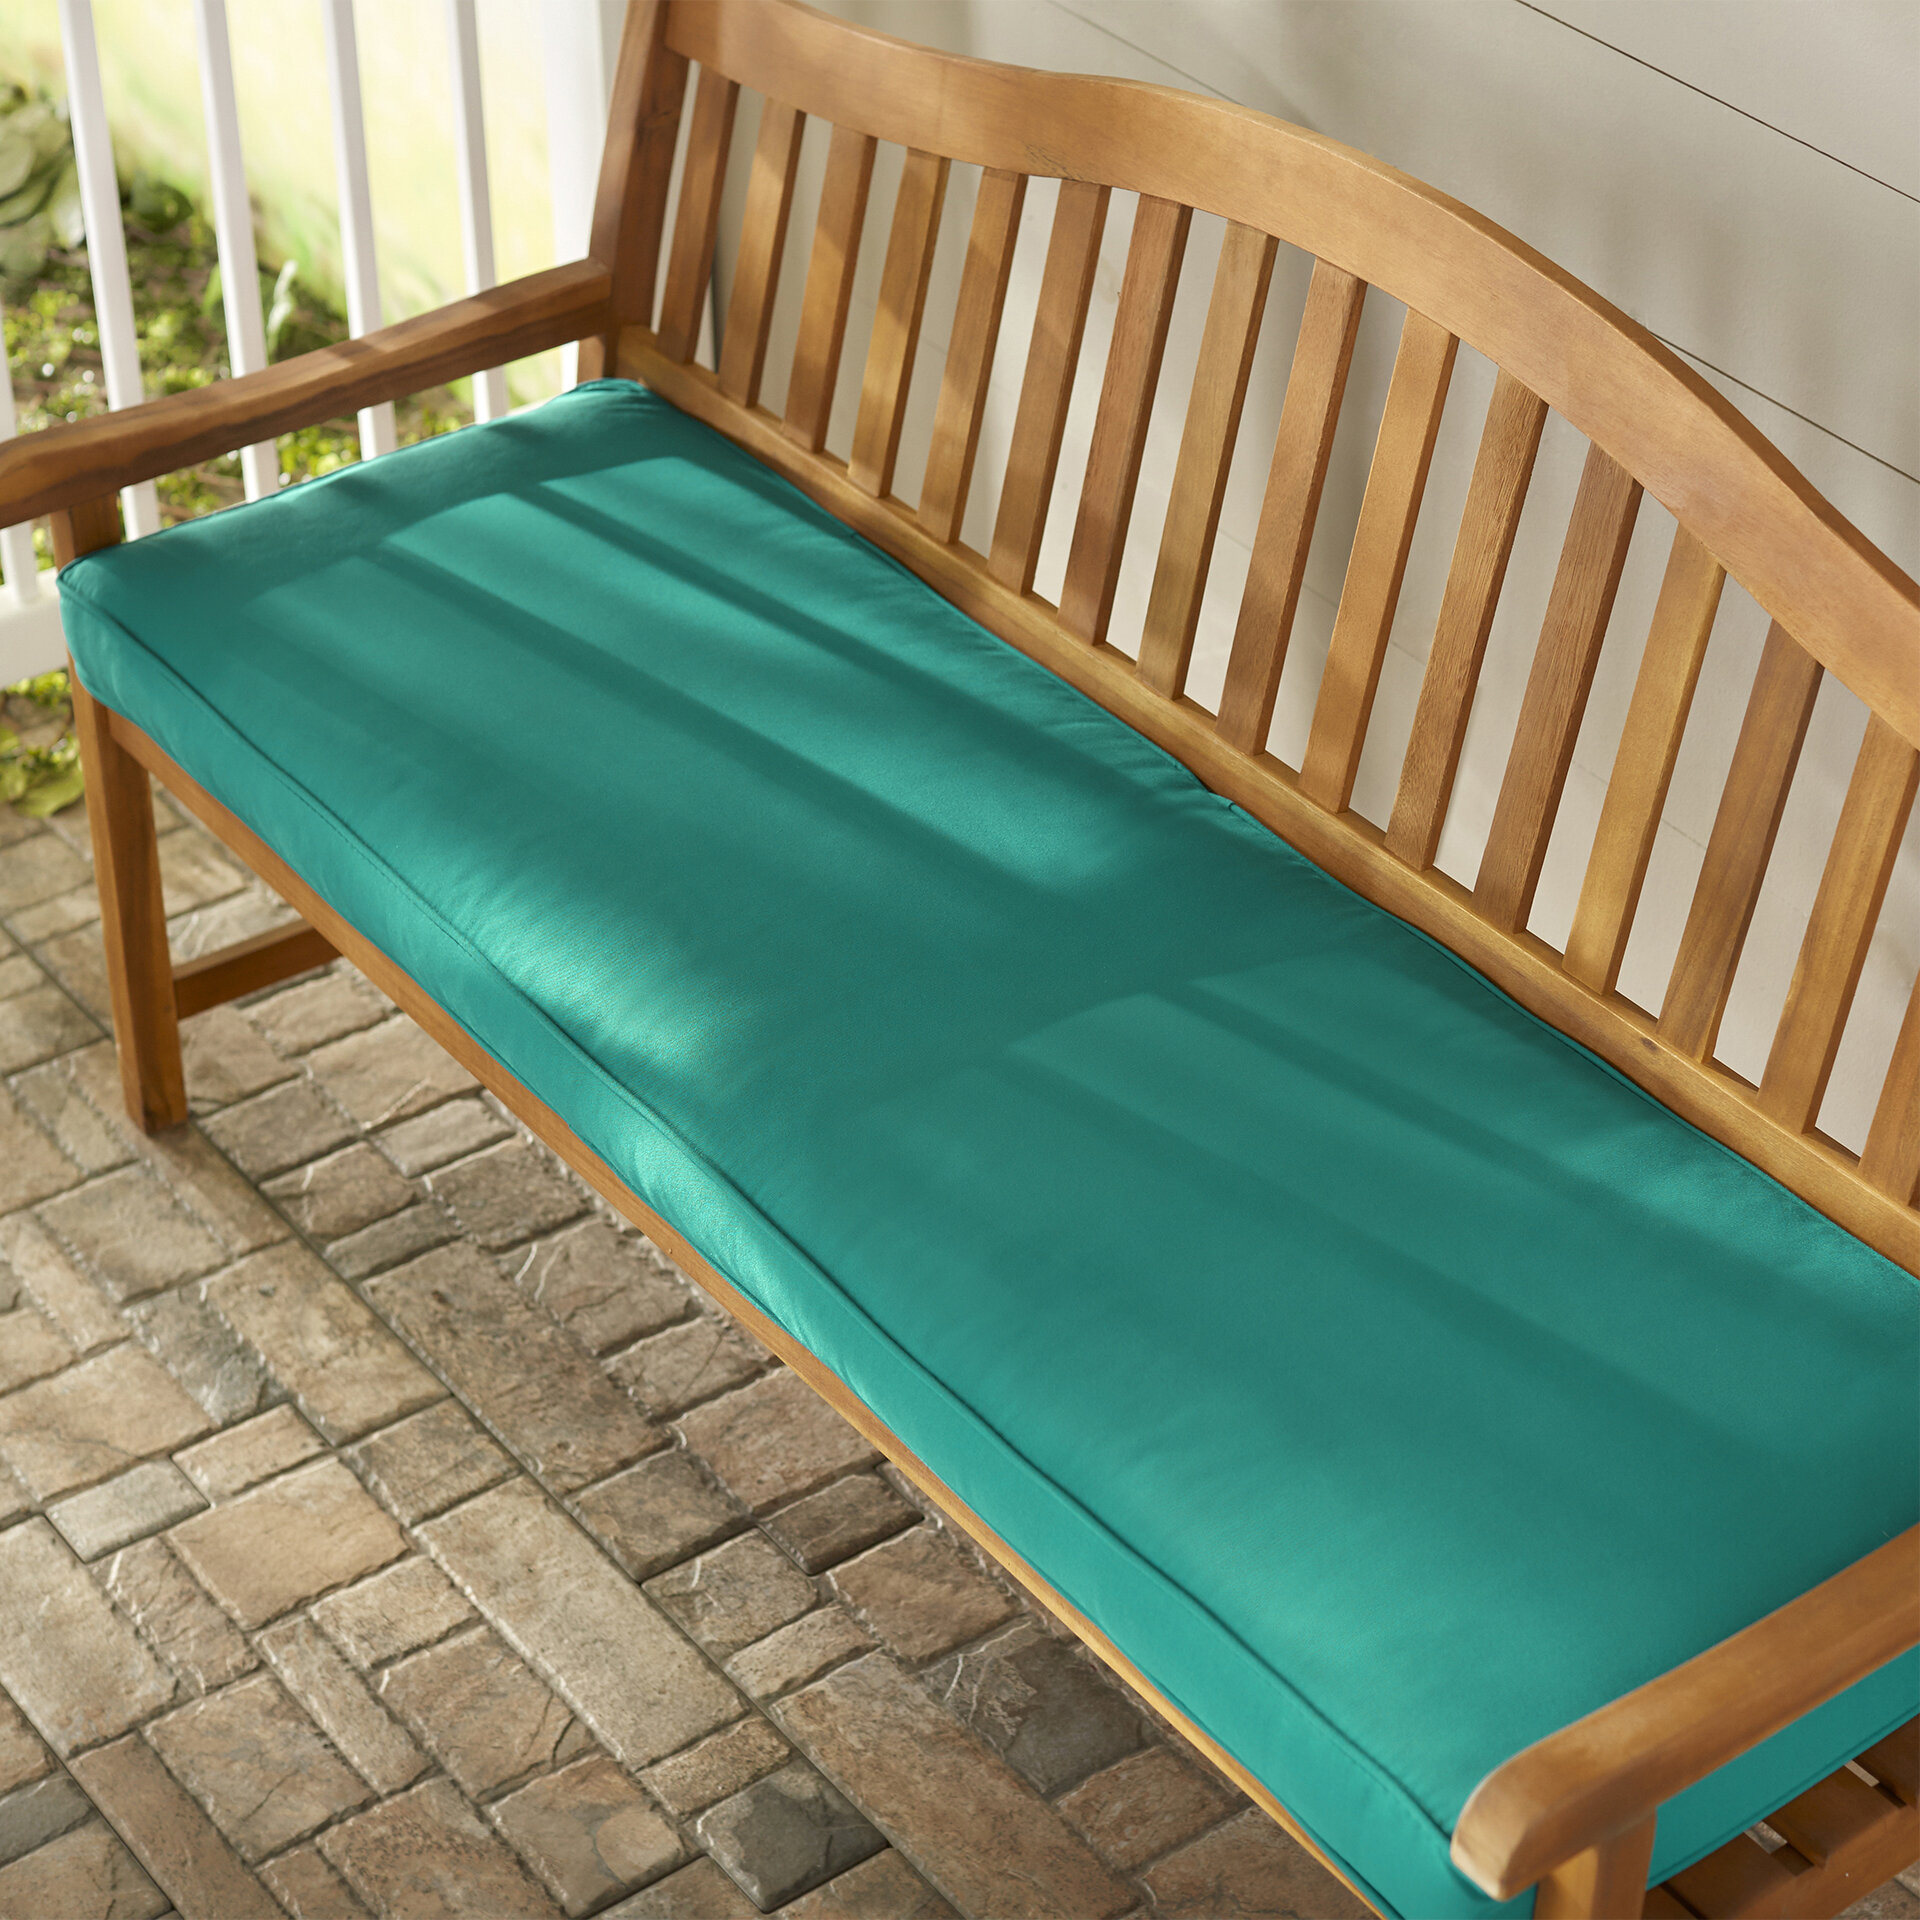 Telleman Outdoor Sunbrella Bench Cushion Reviews Joss Main